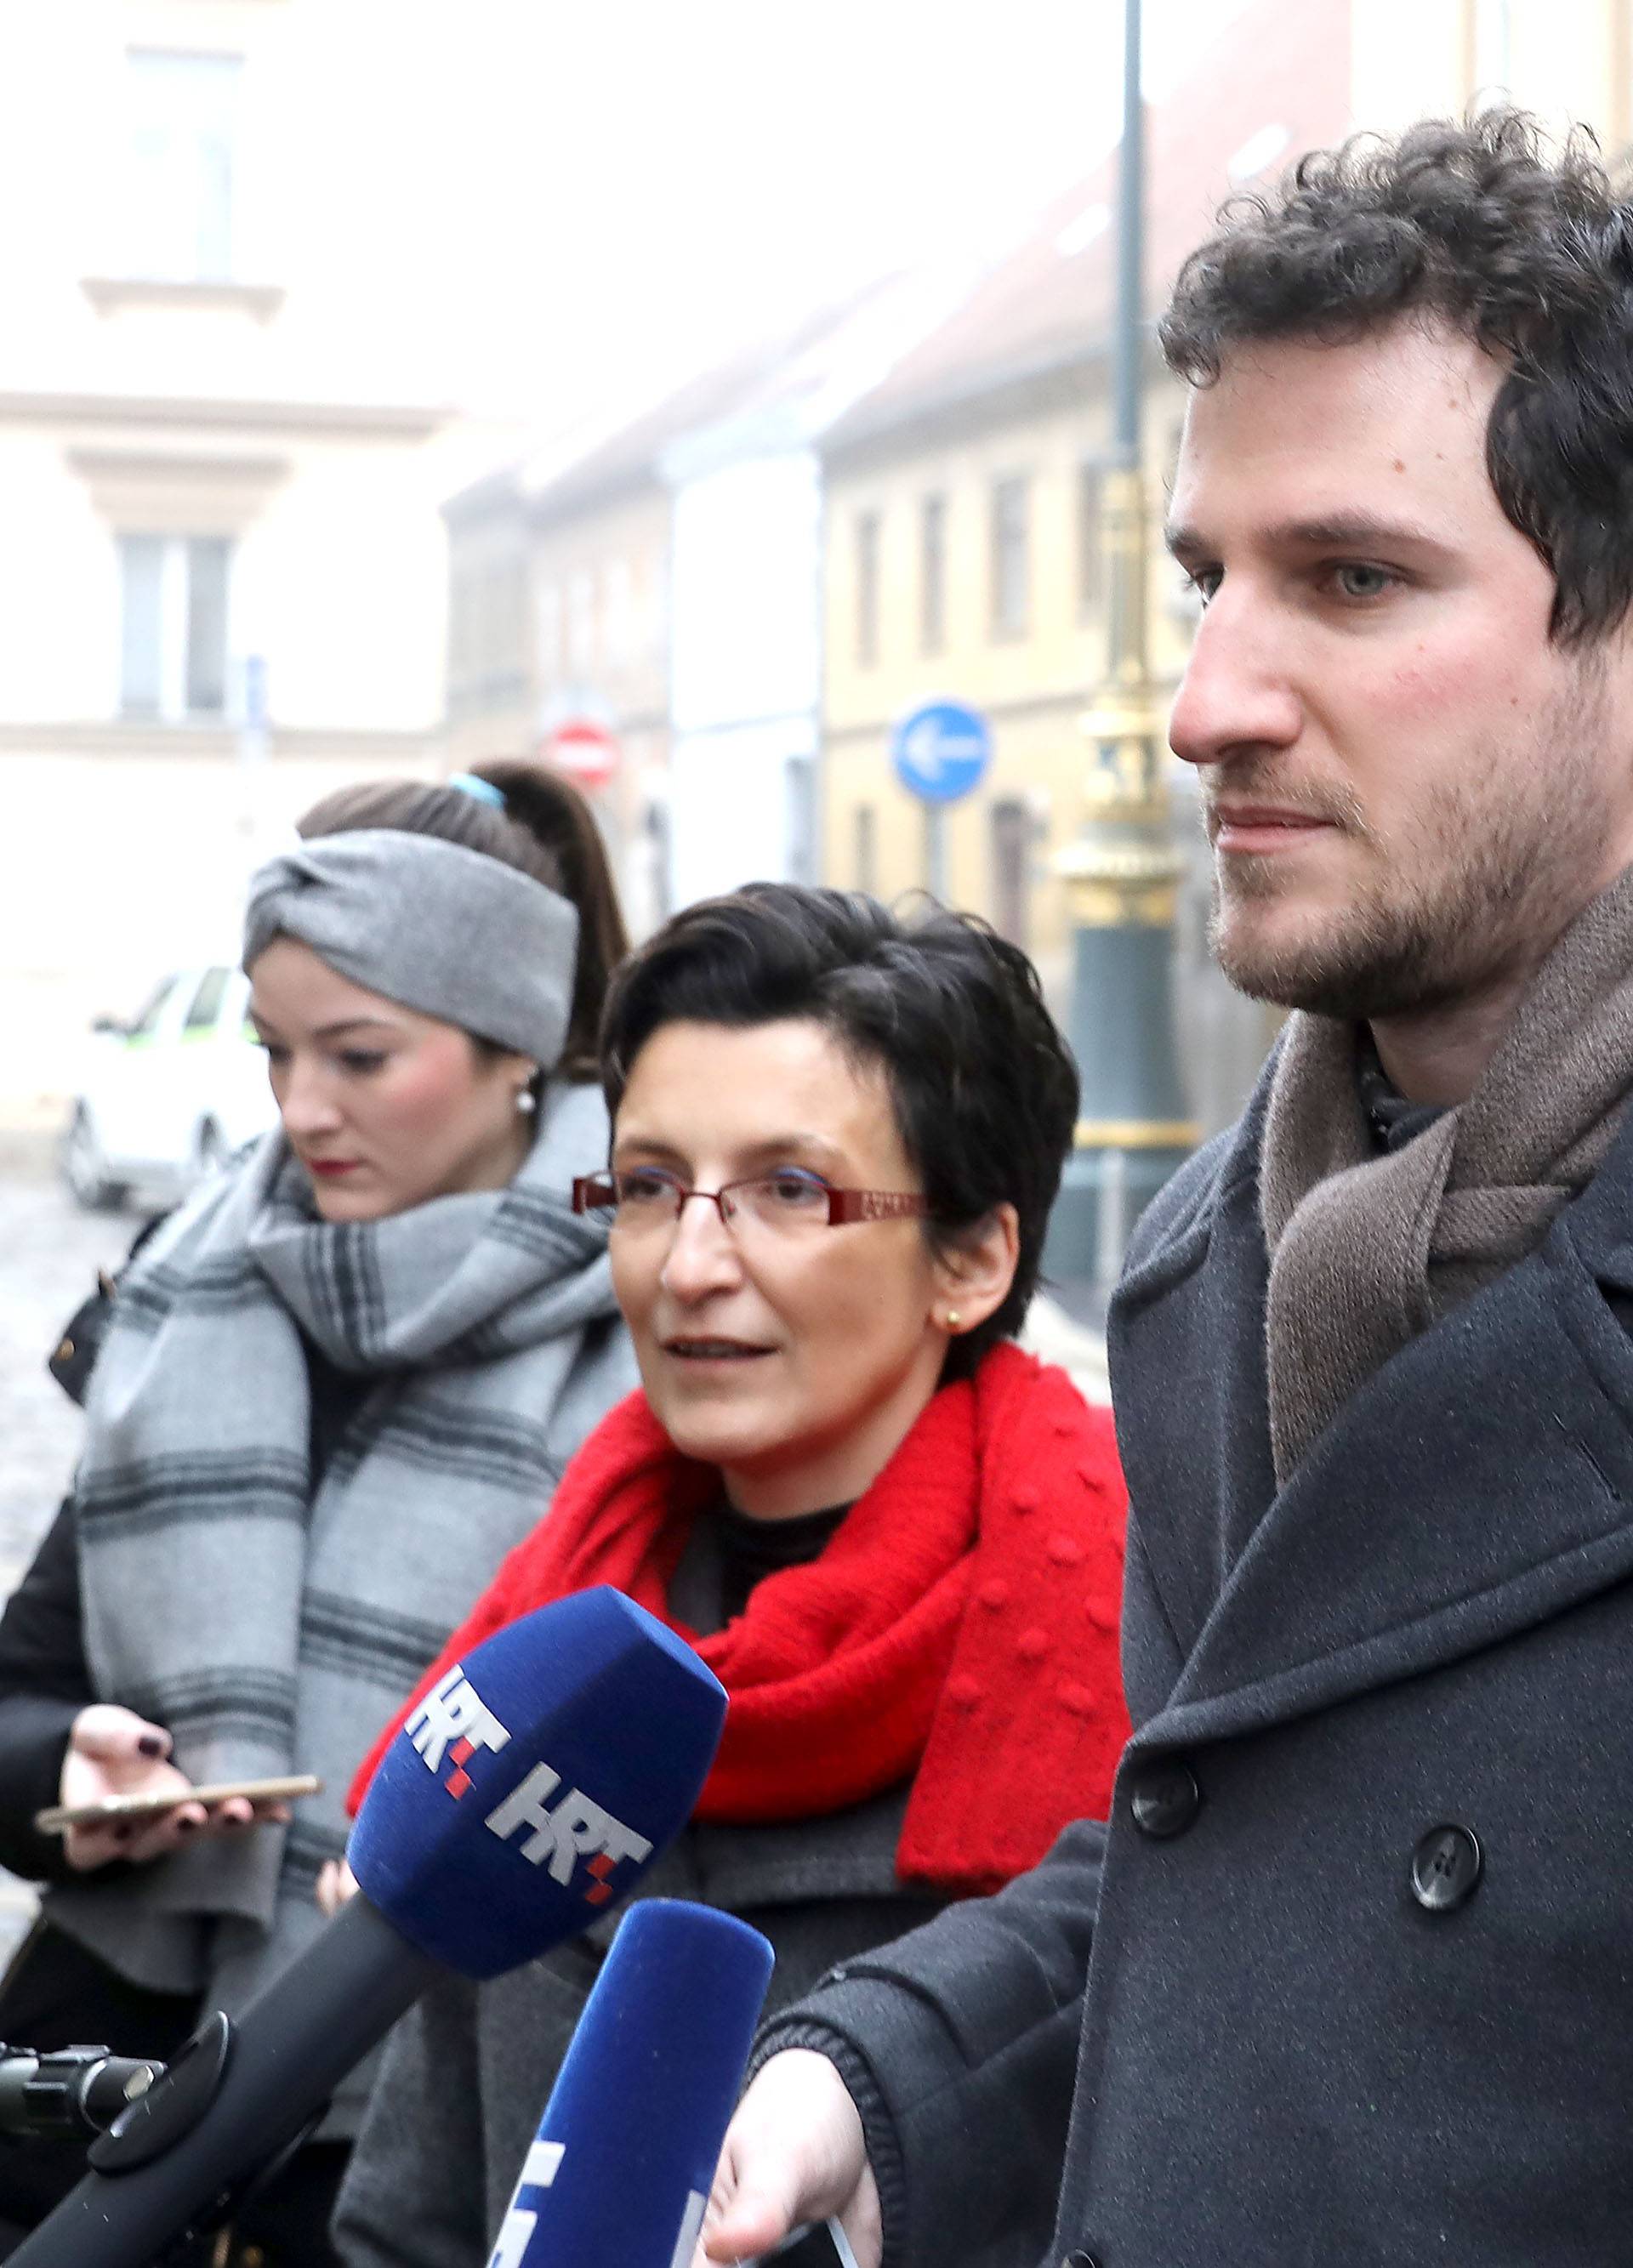 Zagreb: Udruga U ime obitelji na Trgu svetog Marga obratila se medijima